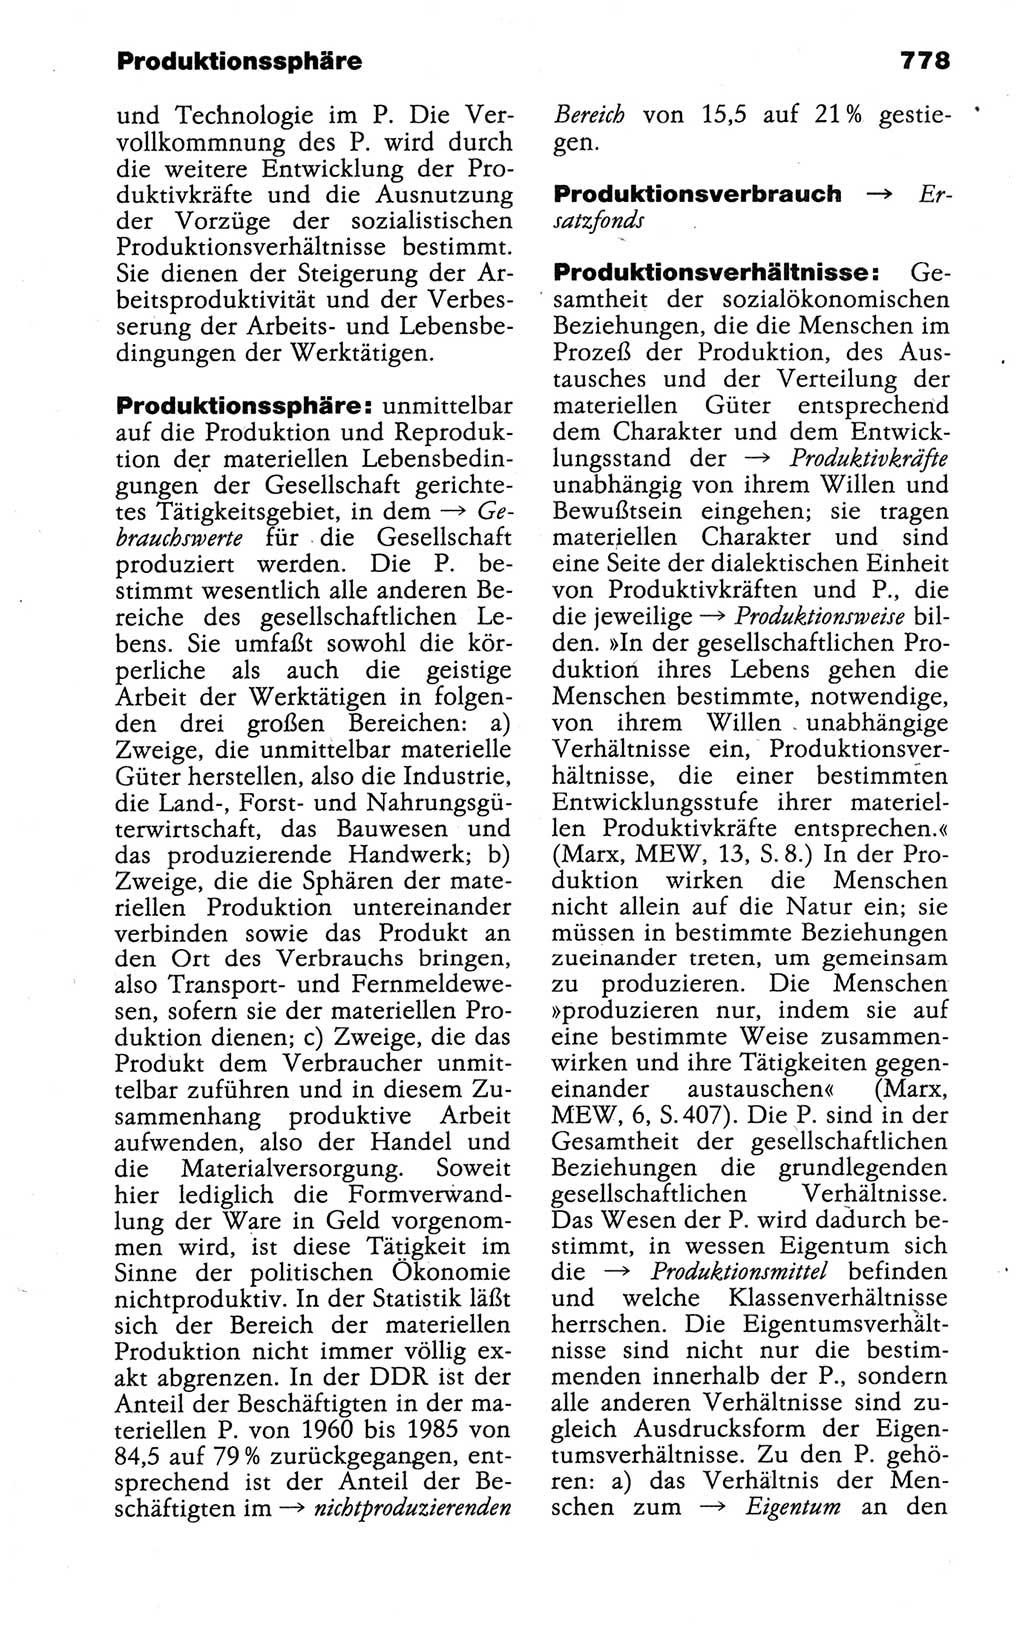 Kleines politisches Wörterbuch [Deutsche Demokratische Republik (DDR)] 1988, Seite 778 (Kl. pol. Wb. DDR 1988, S. 778)